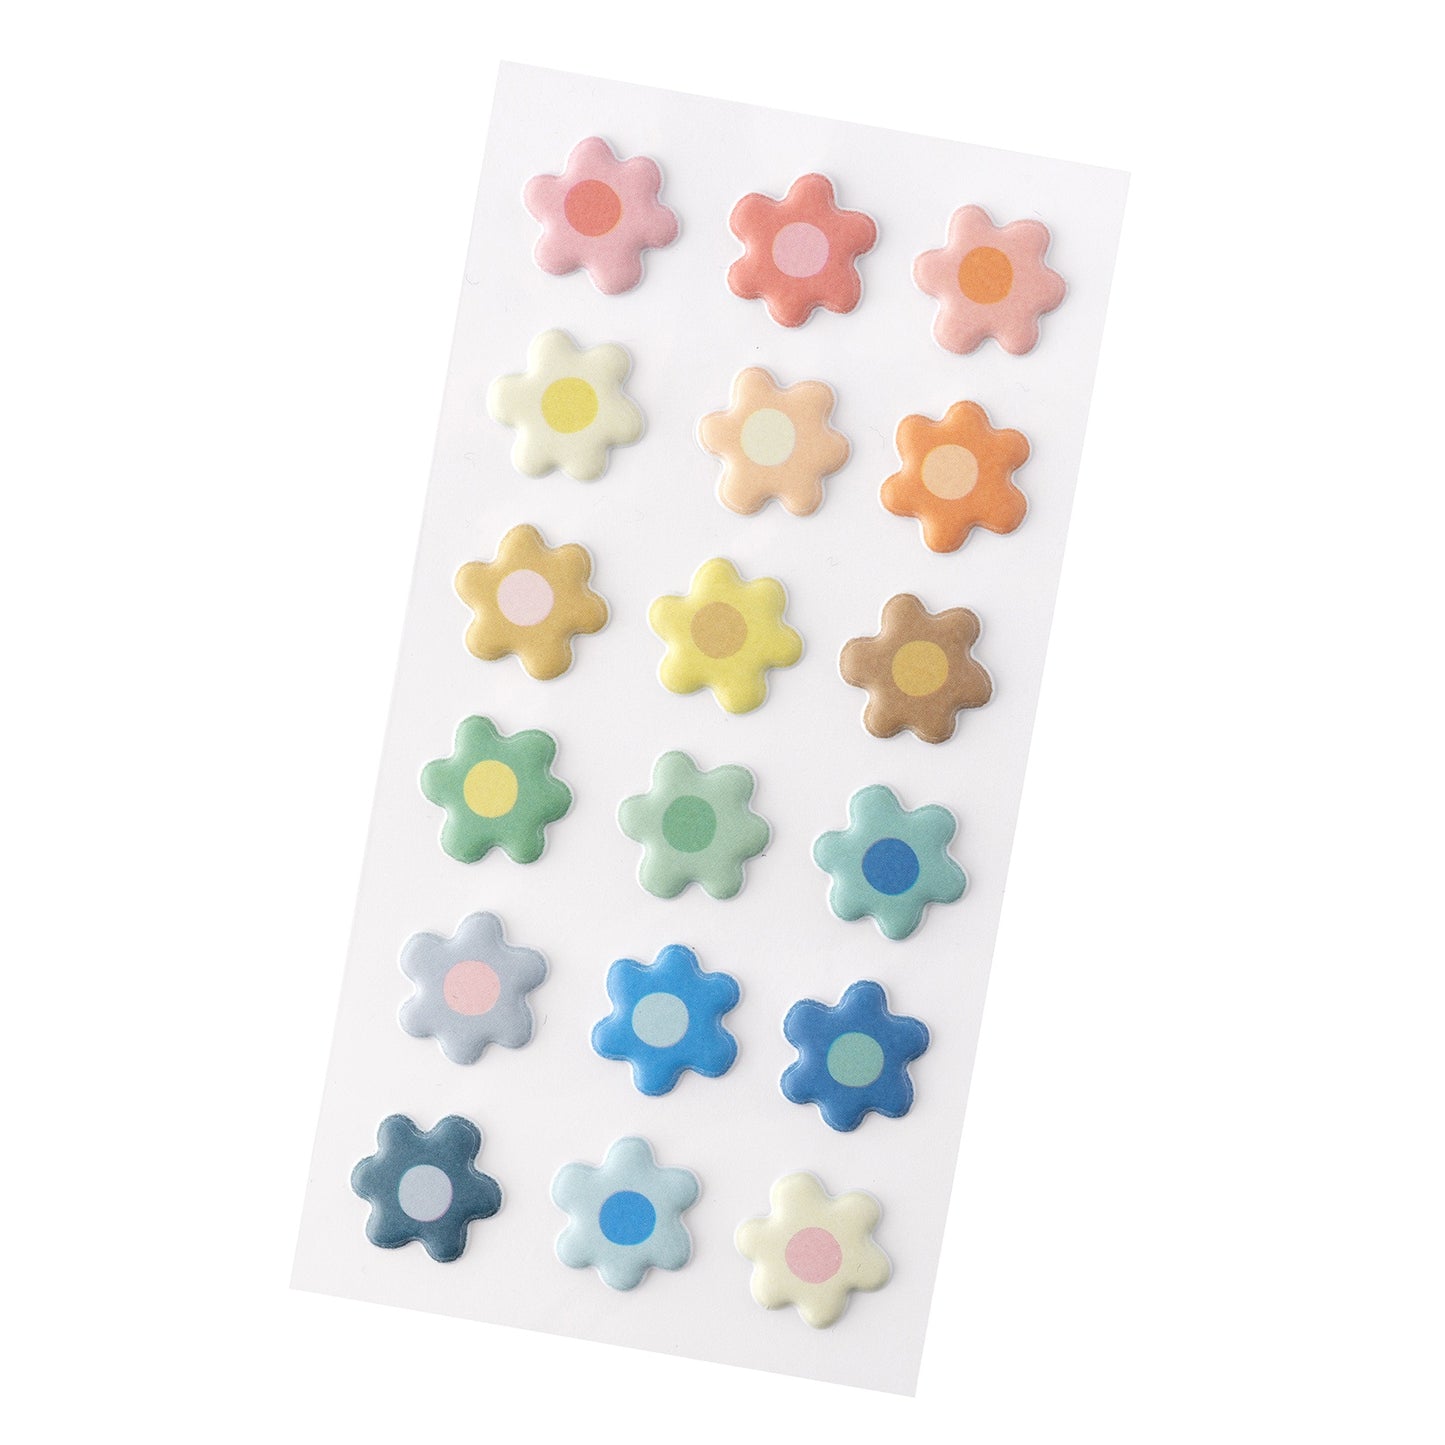 Jen Hadfield Flower Child Mini Puffy Stickers 36/Pkg